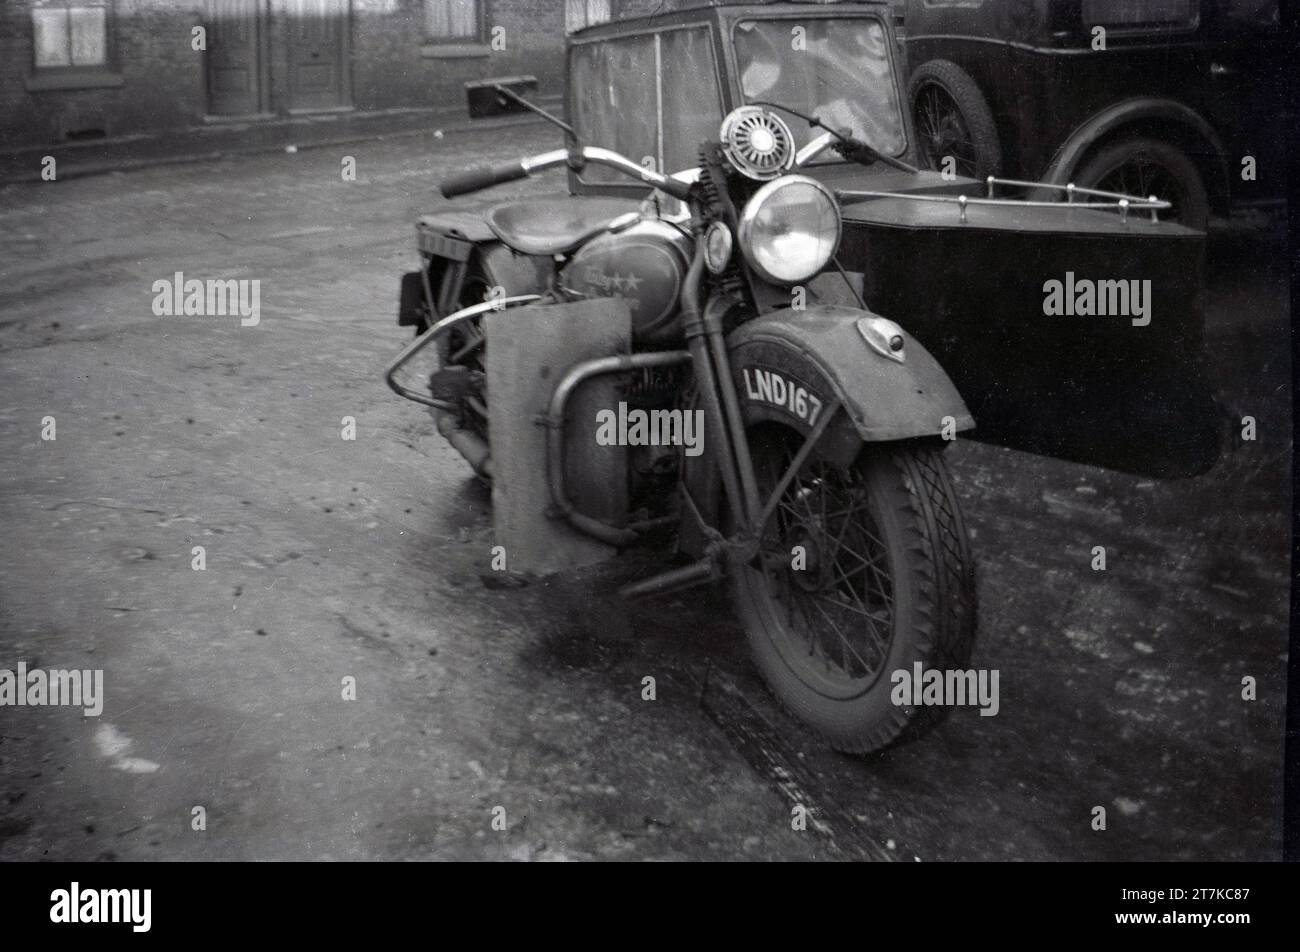 1950, storica, una motocicletta e sidecar Harley Davidson di produzione americana parcheggiata in un vicolo laterale, Oldham, Inghilterra, Regno Unito. La motocicletta vista è probabilmente un modello WL, un modello precedente alla seconda guerra mondiale. Il design del sidecar è interessante, sembra una piccola barca con tetto chiuso. Foto Stock